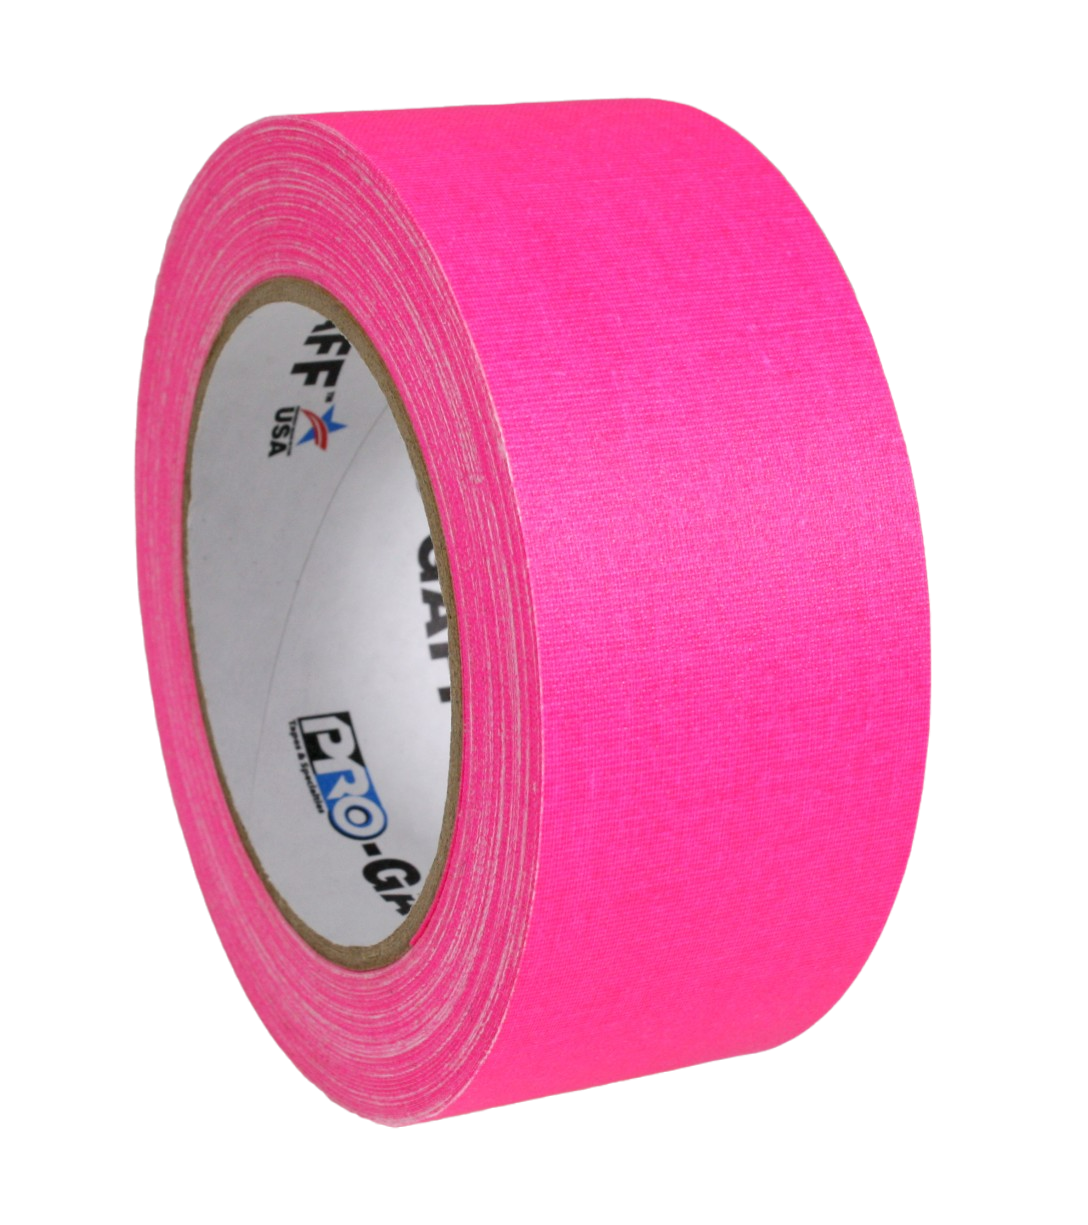 Pro Gaff 2", fluro pink, 22.8m roll